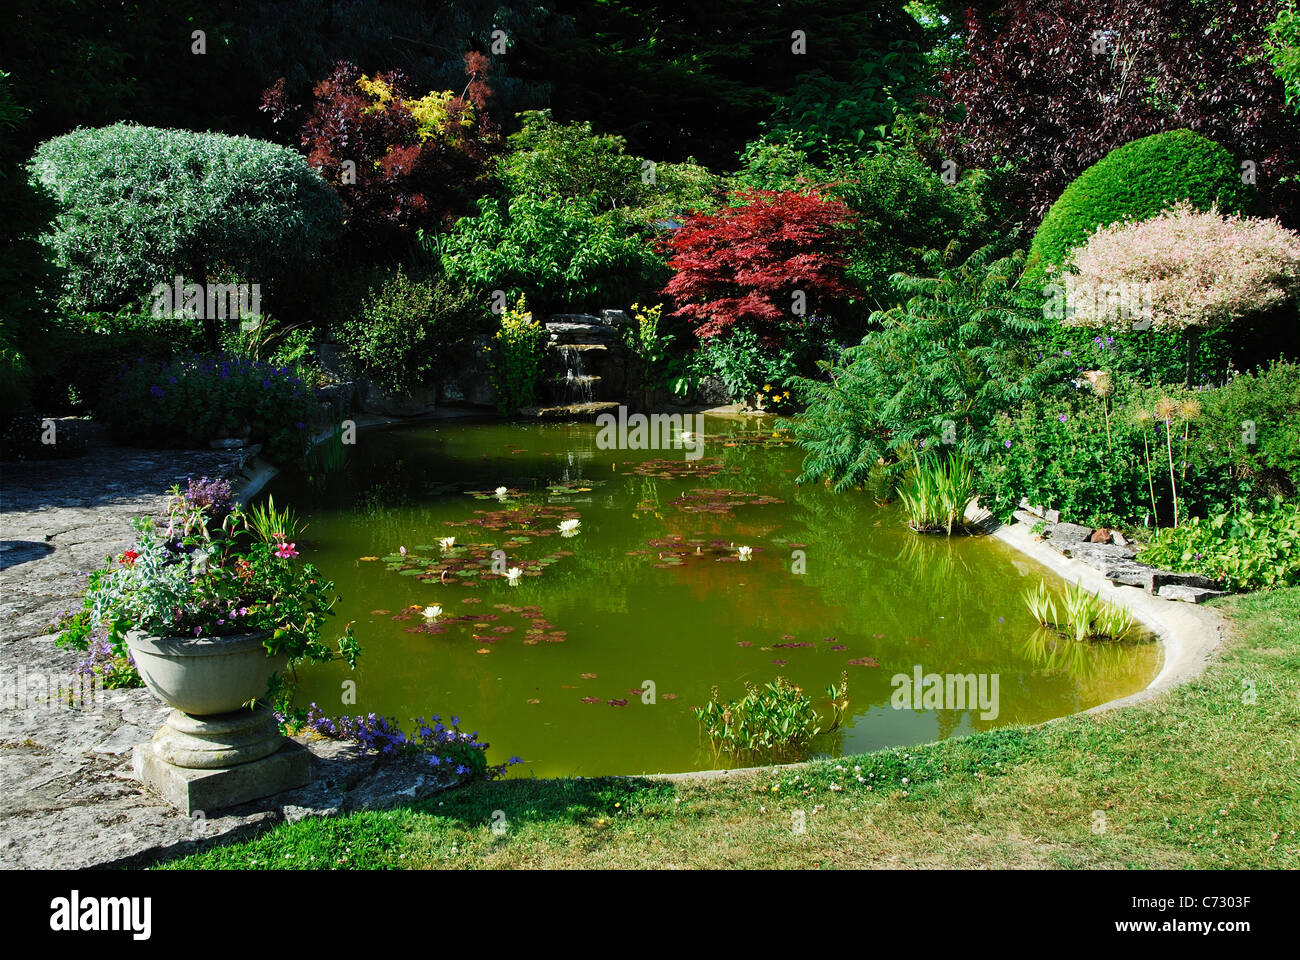 Formal garden pond. Dorset, UK June 2010 Stock Photo